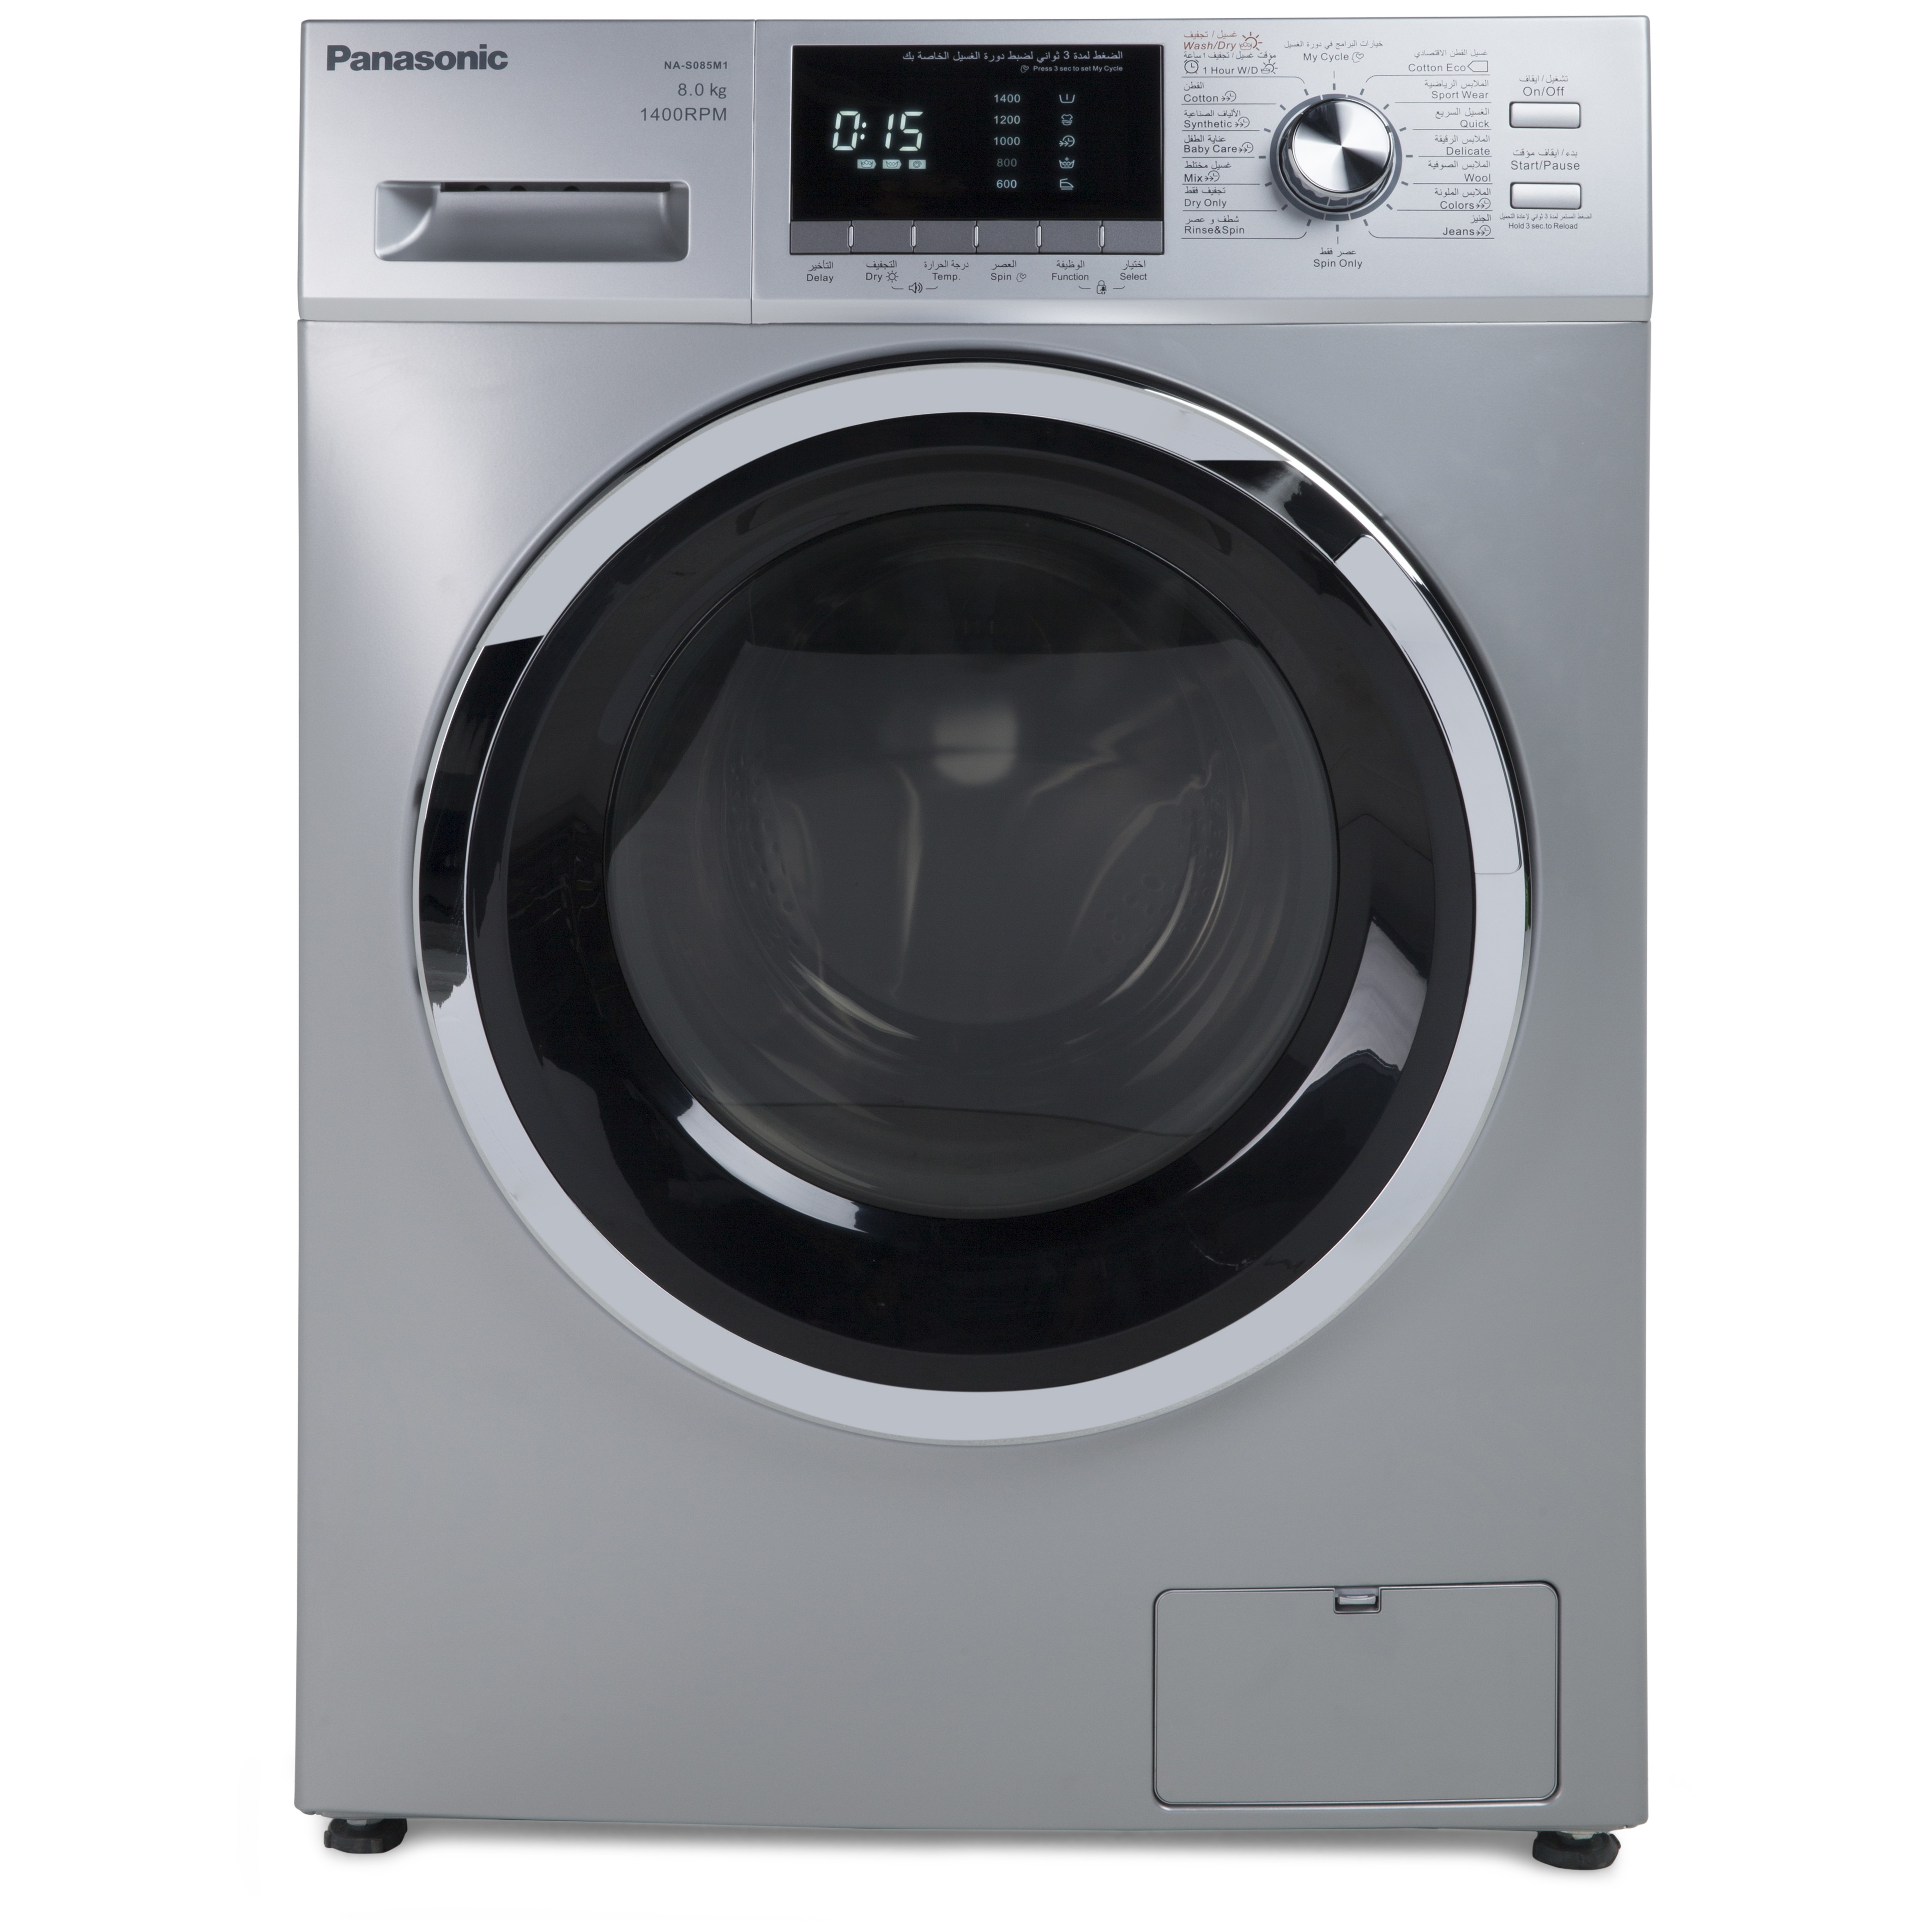 bompani washer dryer manual